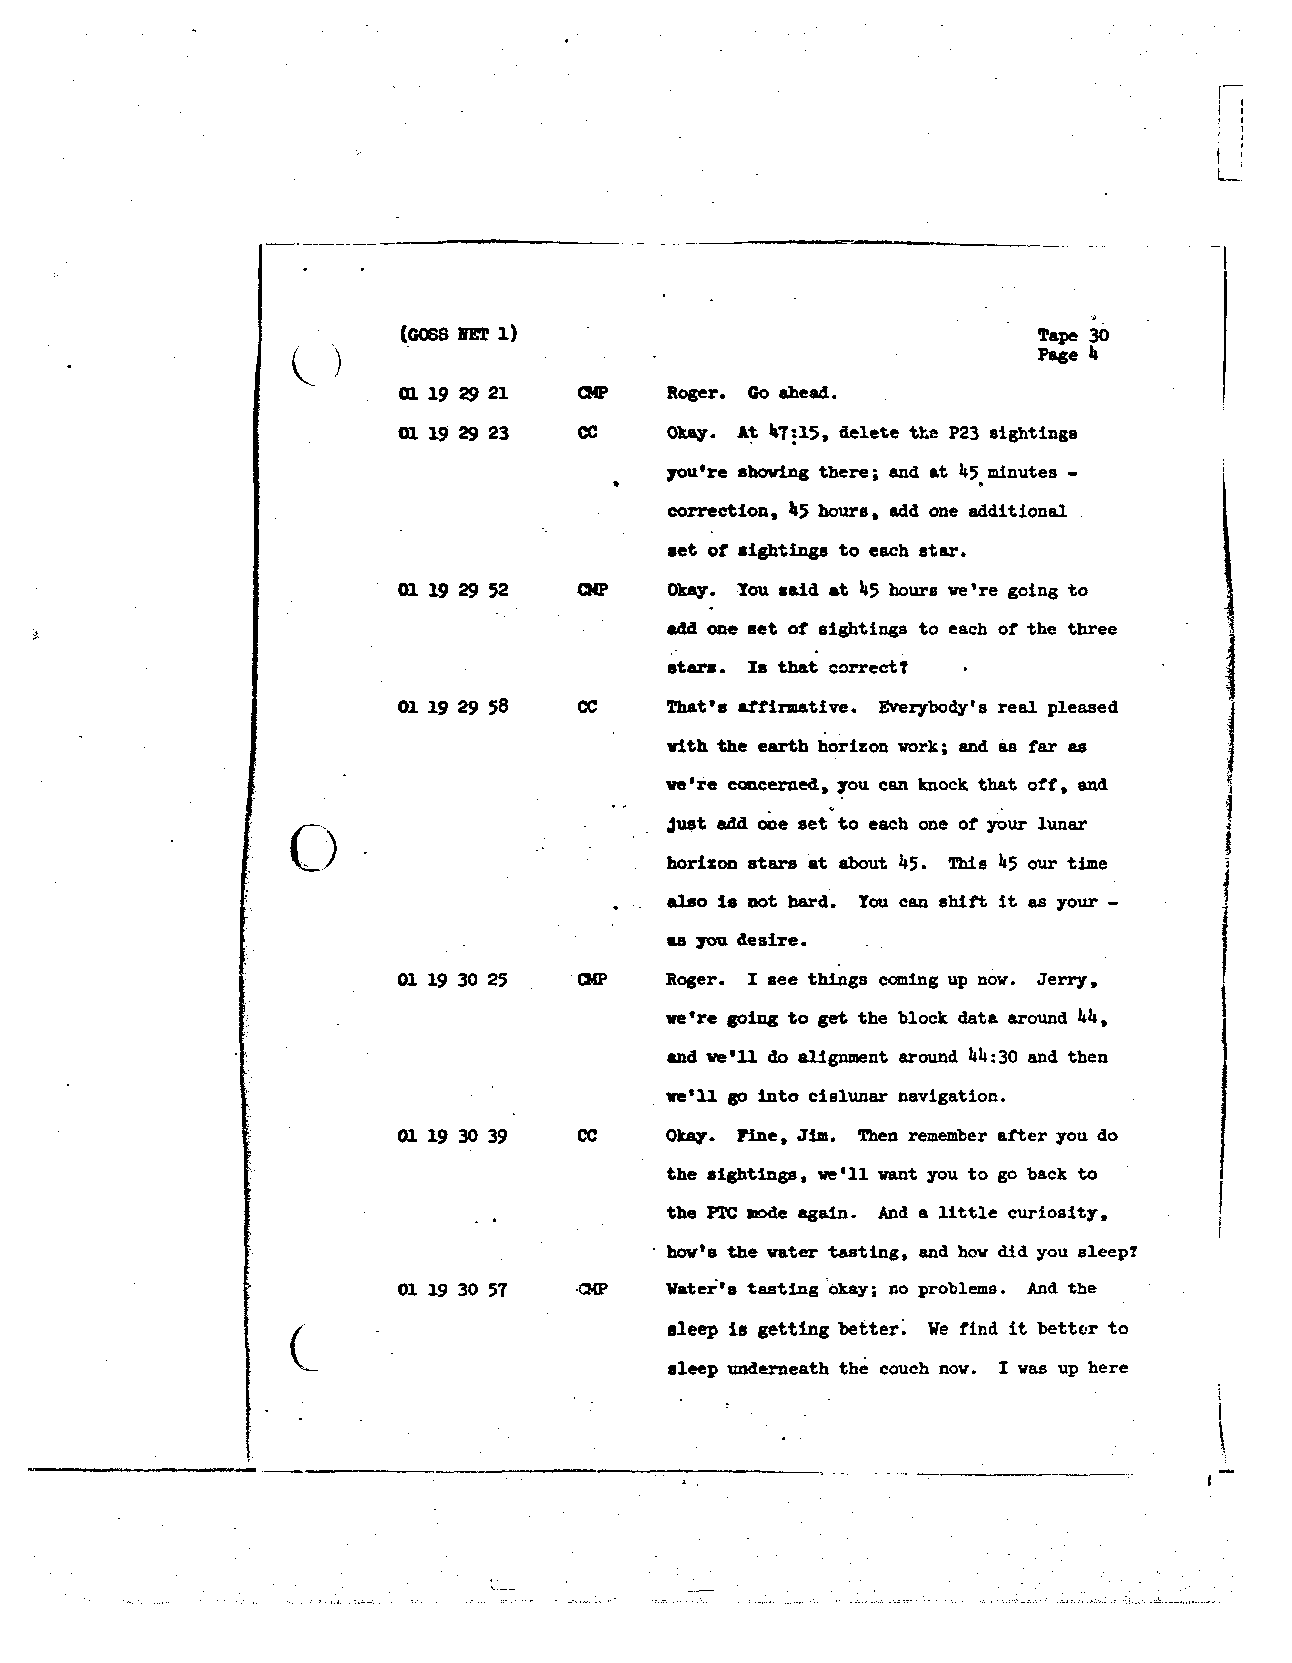 Page 233 of Apollo 8’s original transcript